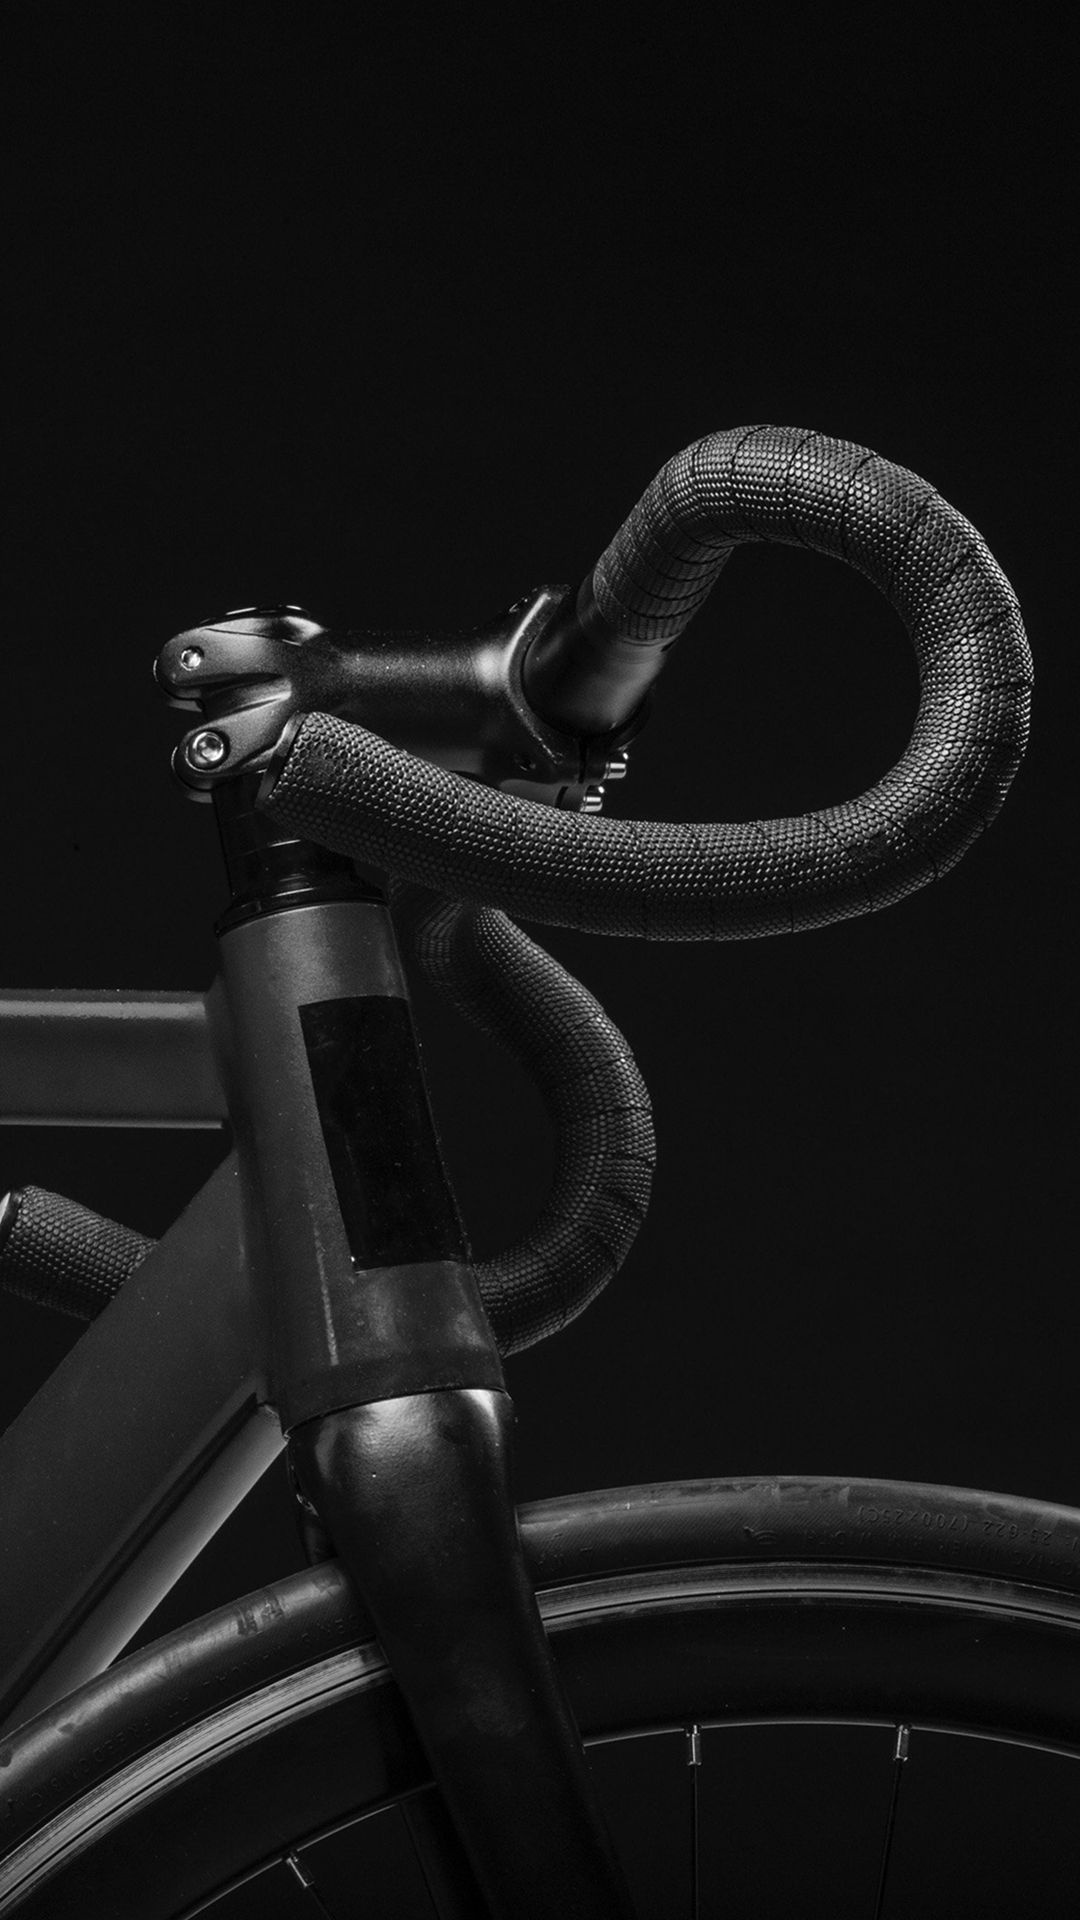 Pro Bikes, Dark minimalistic photography, Nature-inspired, Bike art, 1080x1920 Full HD Handy